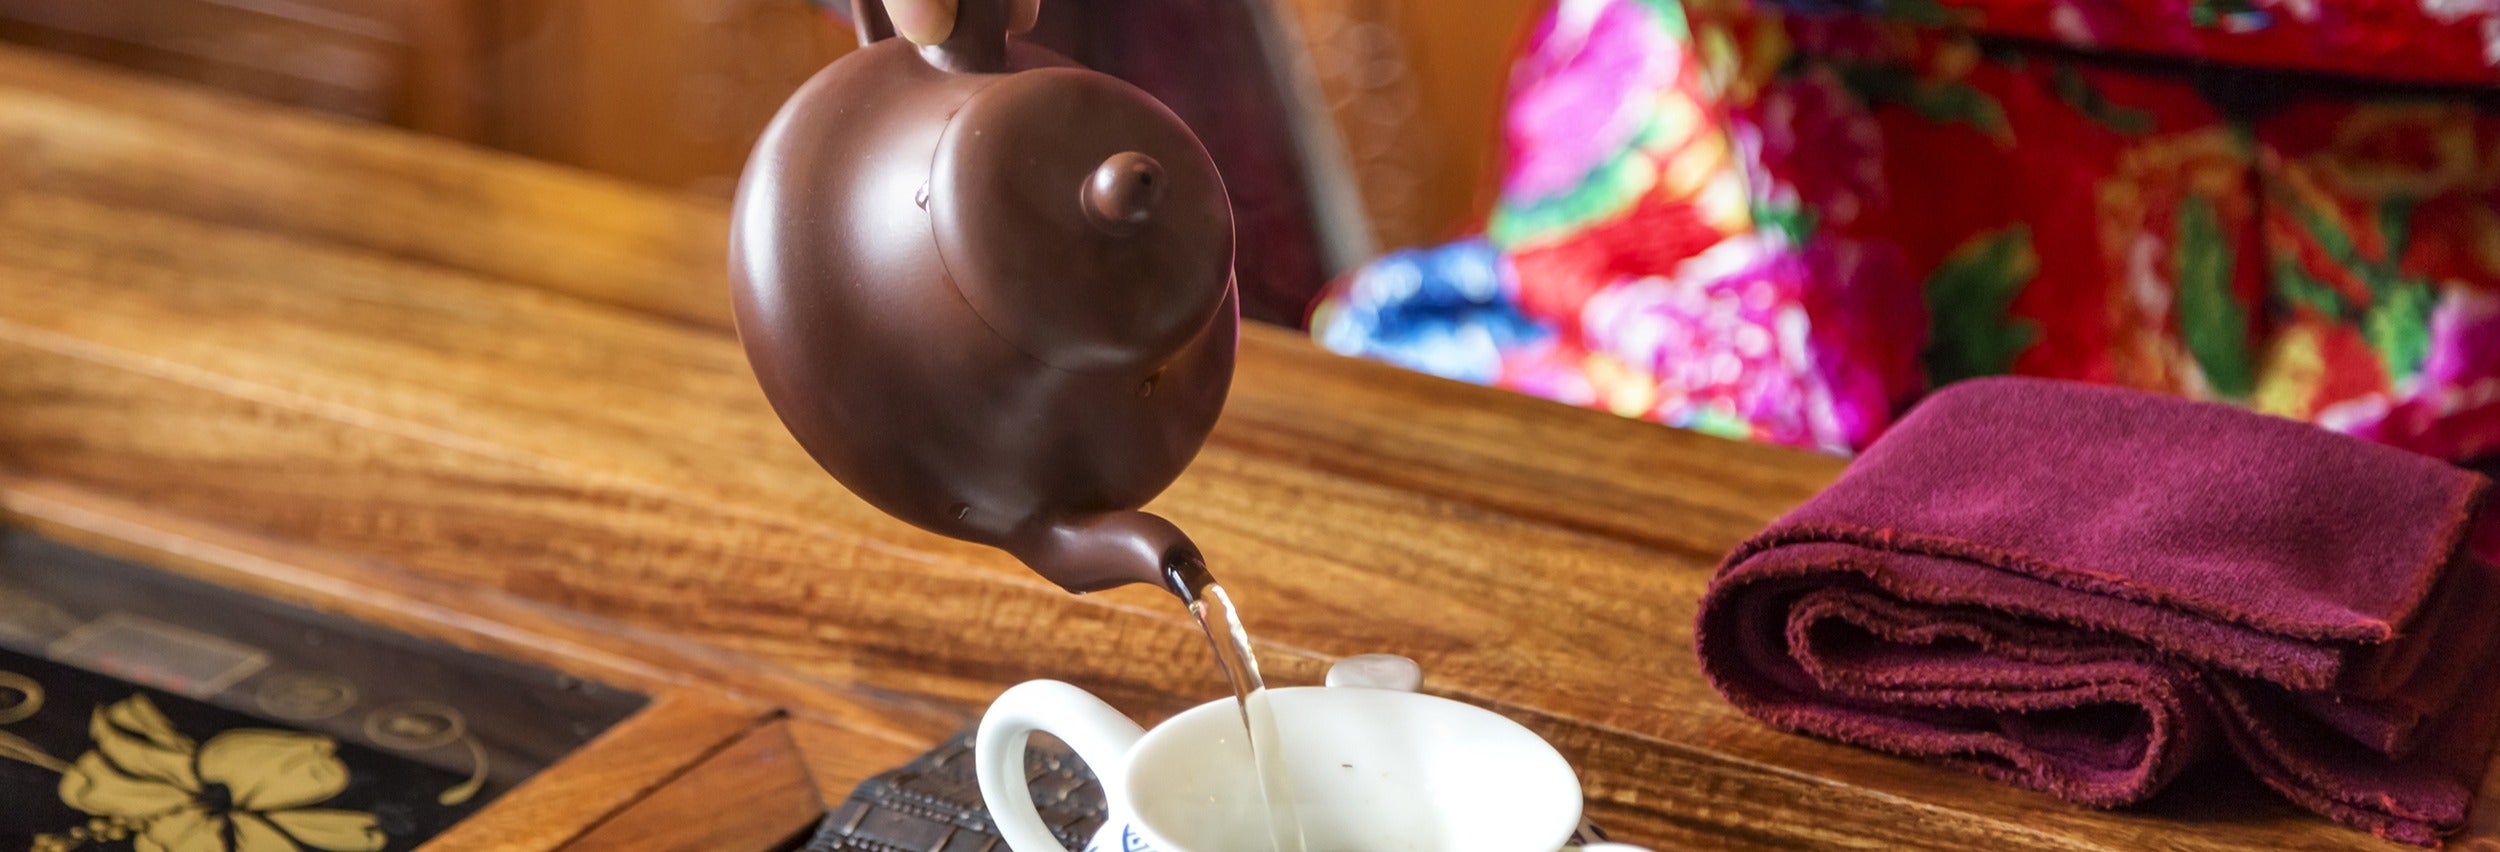 Cerimonia del tè cinese